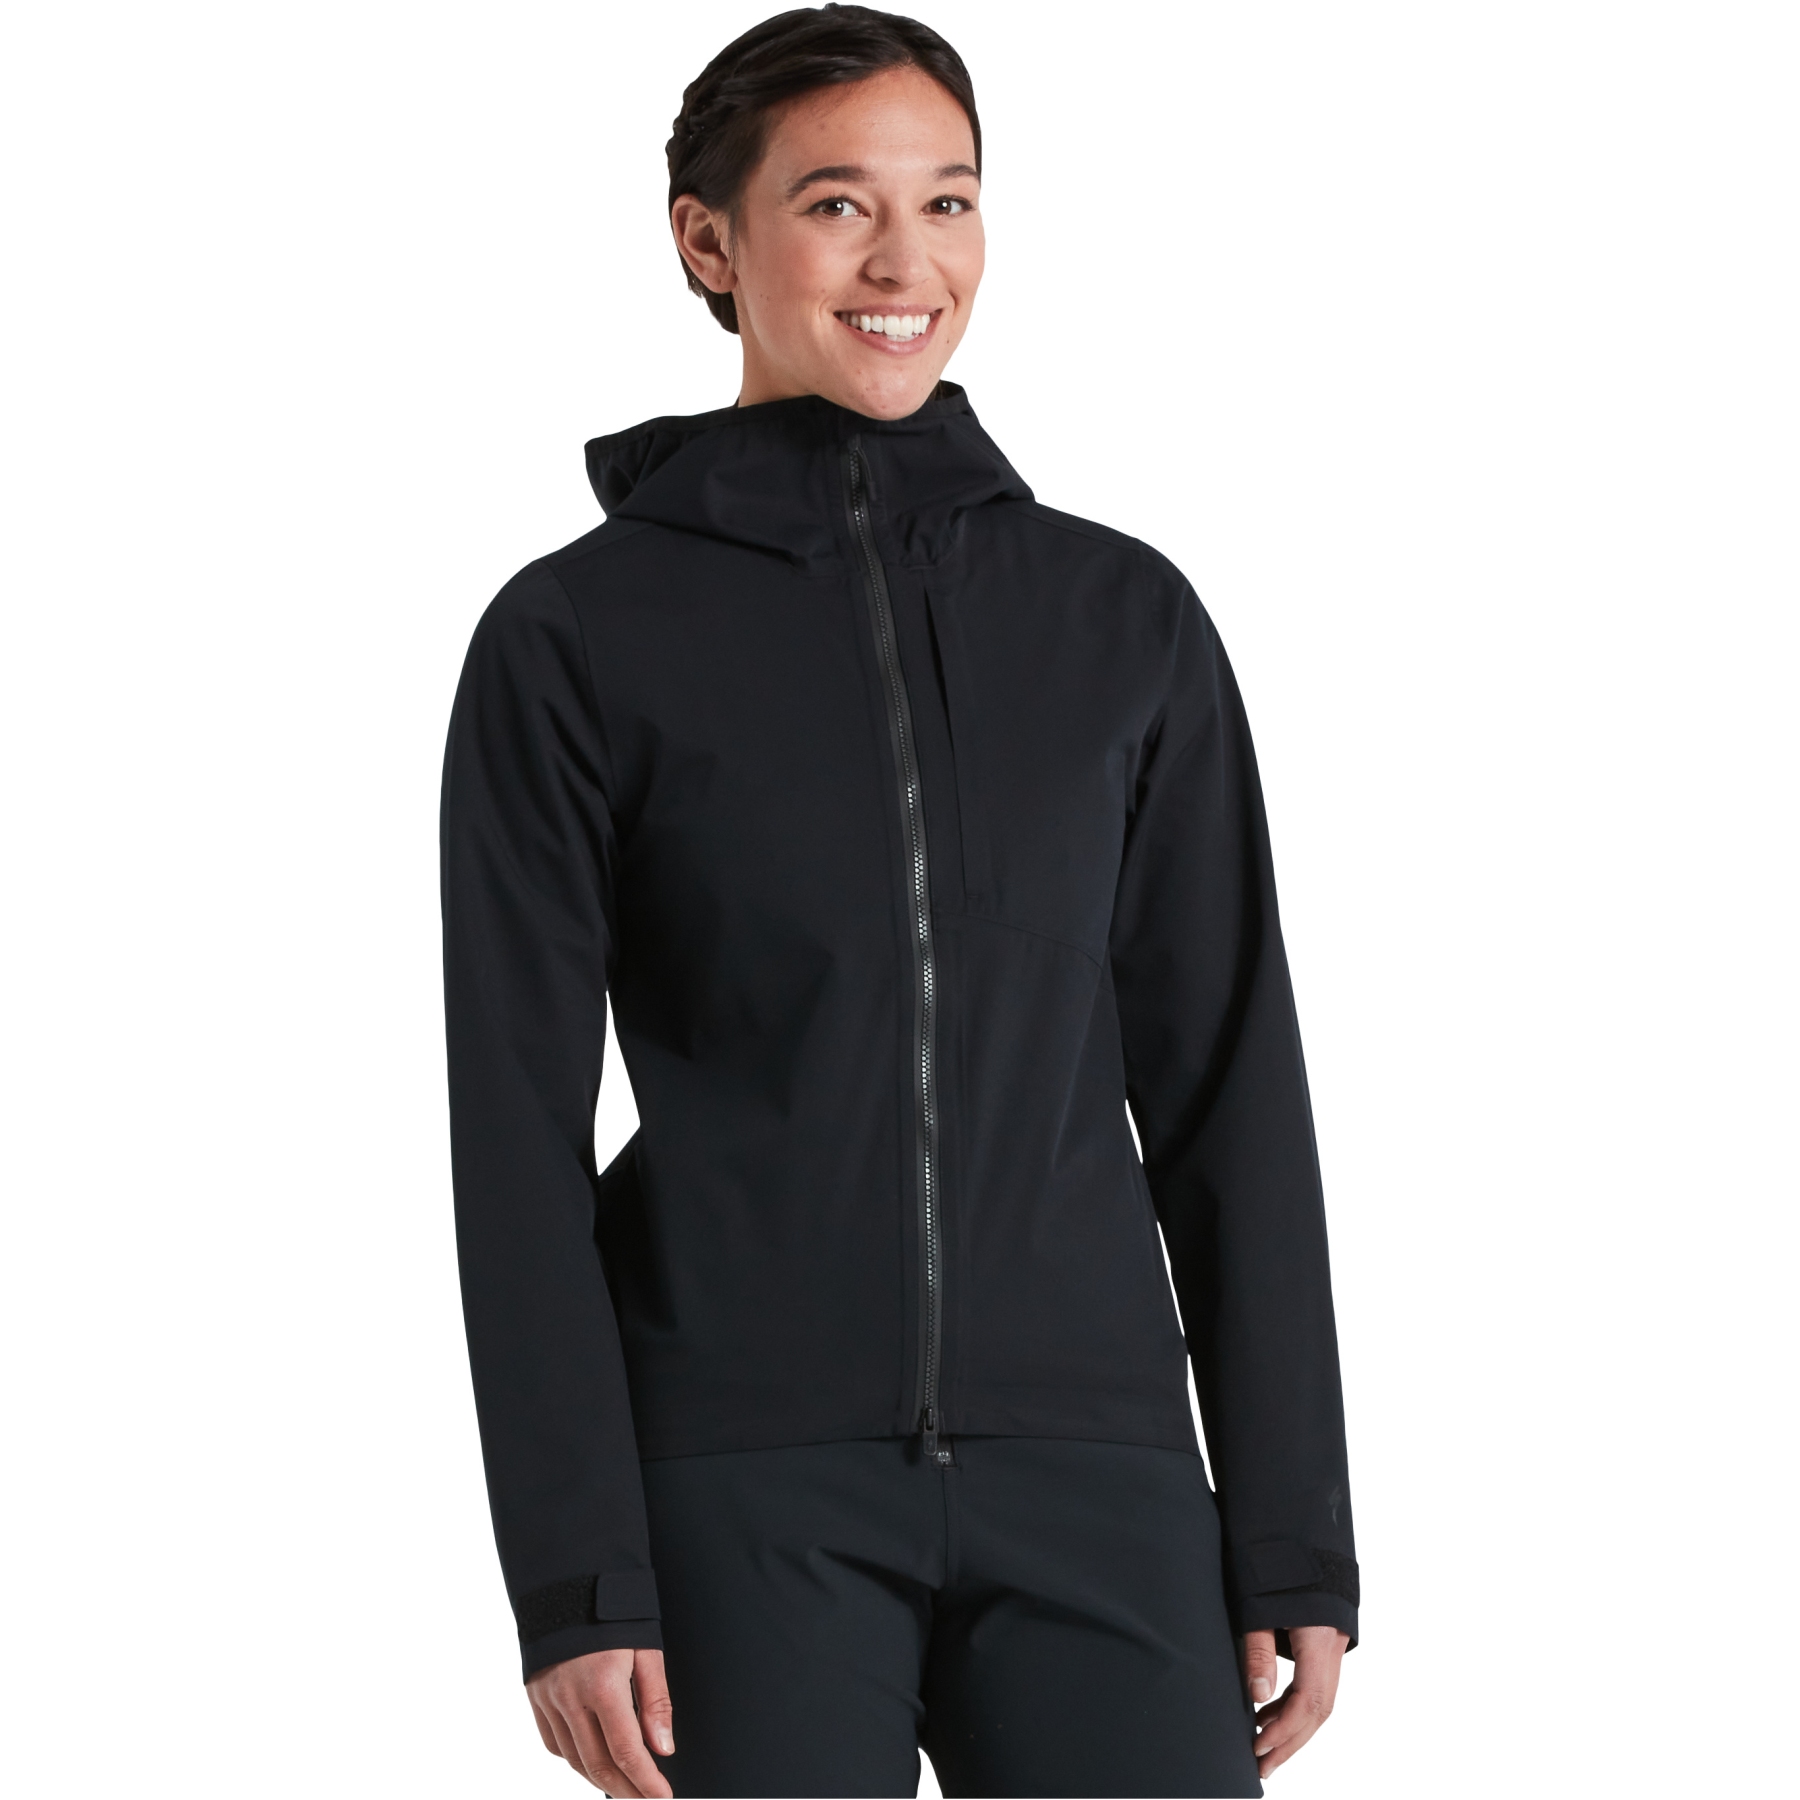 Produktbild von Specialized Trail Regenjacke Damen - schwarz